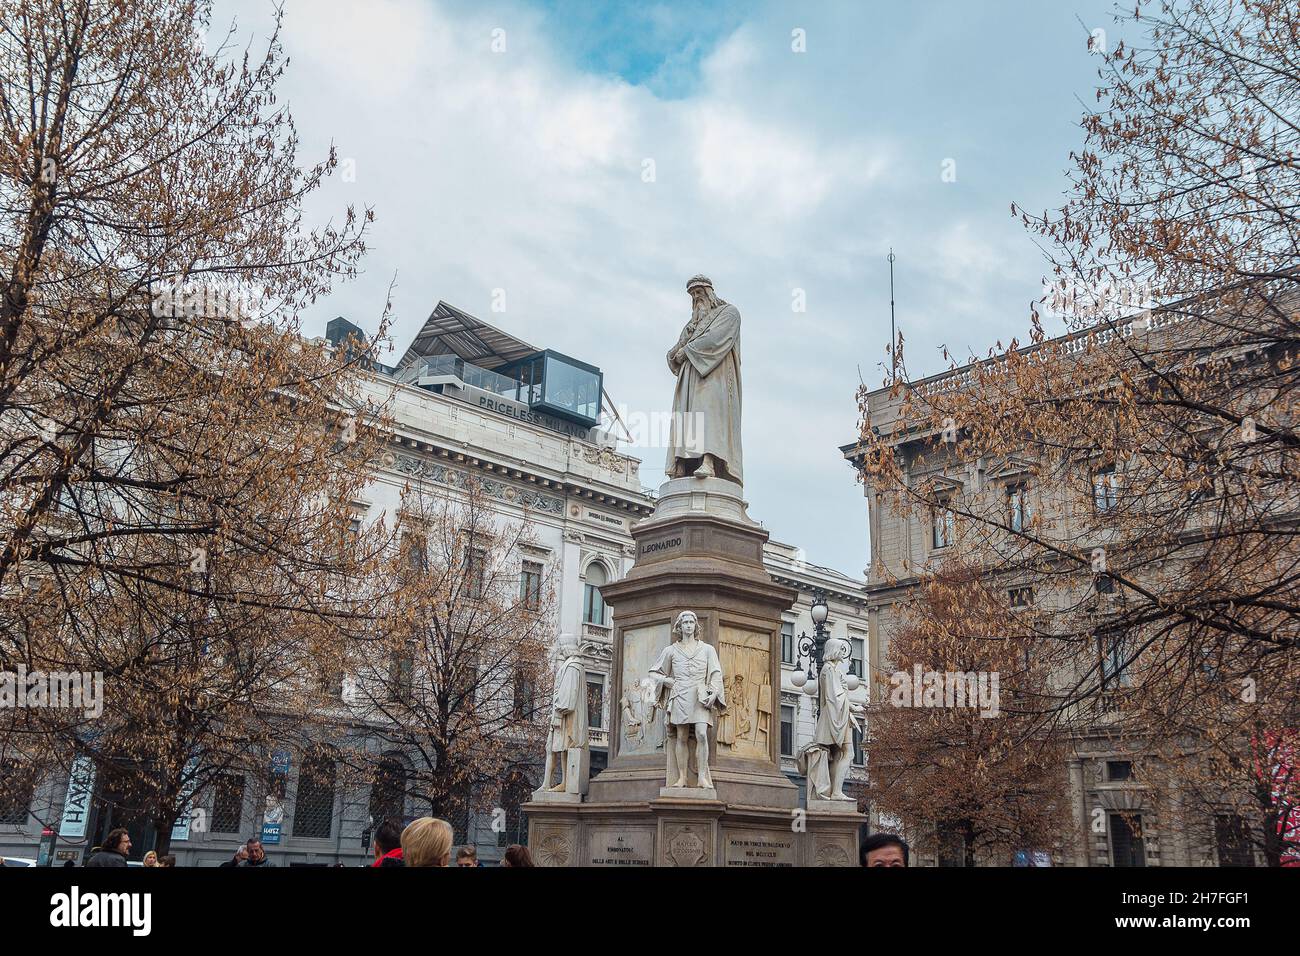 The monument to Leonardo da Vinci at Piazza della Scala square in Milan Stock Photo